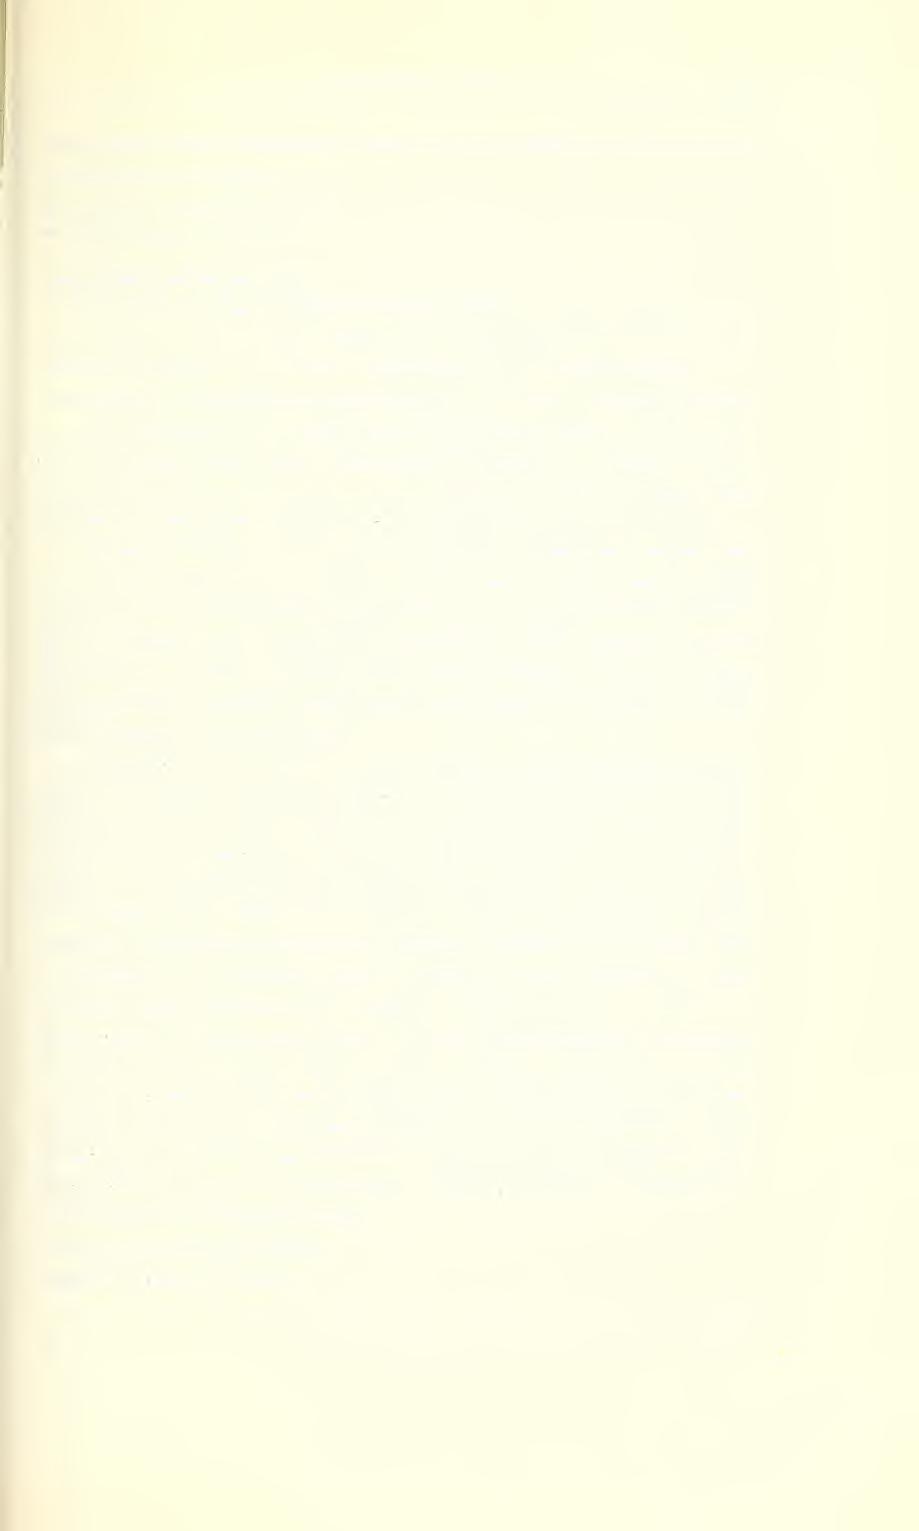 Ent. Arb. Mus. Frey 14, 1963 167 druck tragen lange abstehende Haare, die Punkte seitlich der Randkante des Eindruckes etwas kürzer. Holotype in Sammlung Schedl. Fundort: Mexico: Cordoba.